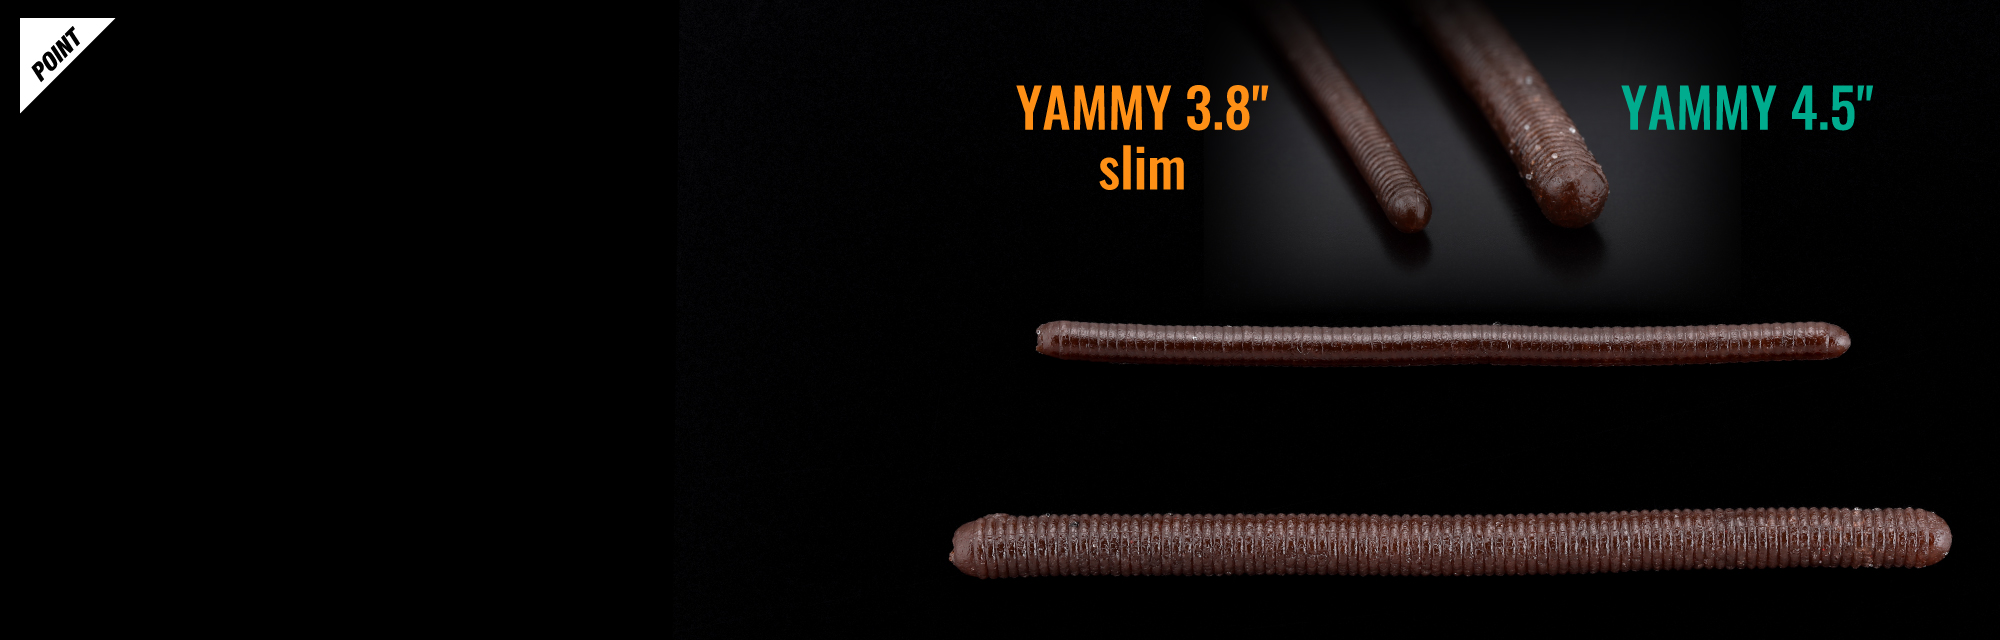 ヤミィ3.8 スリム YAMMY 3.8″ SLIM 